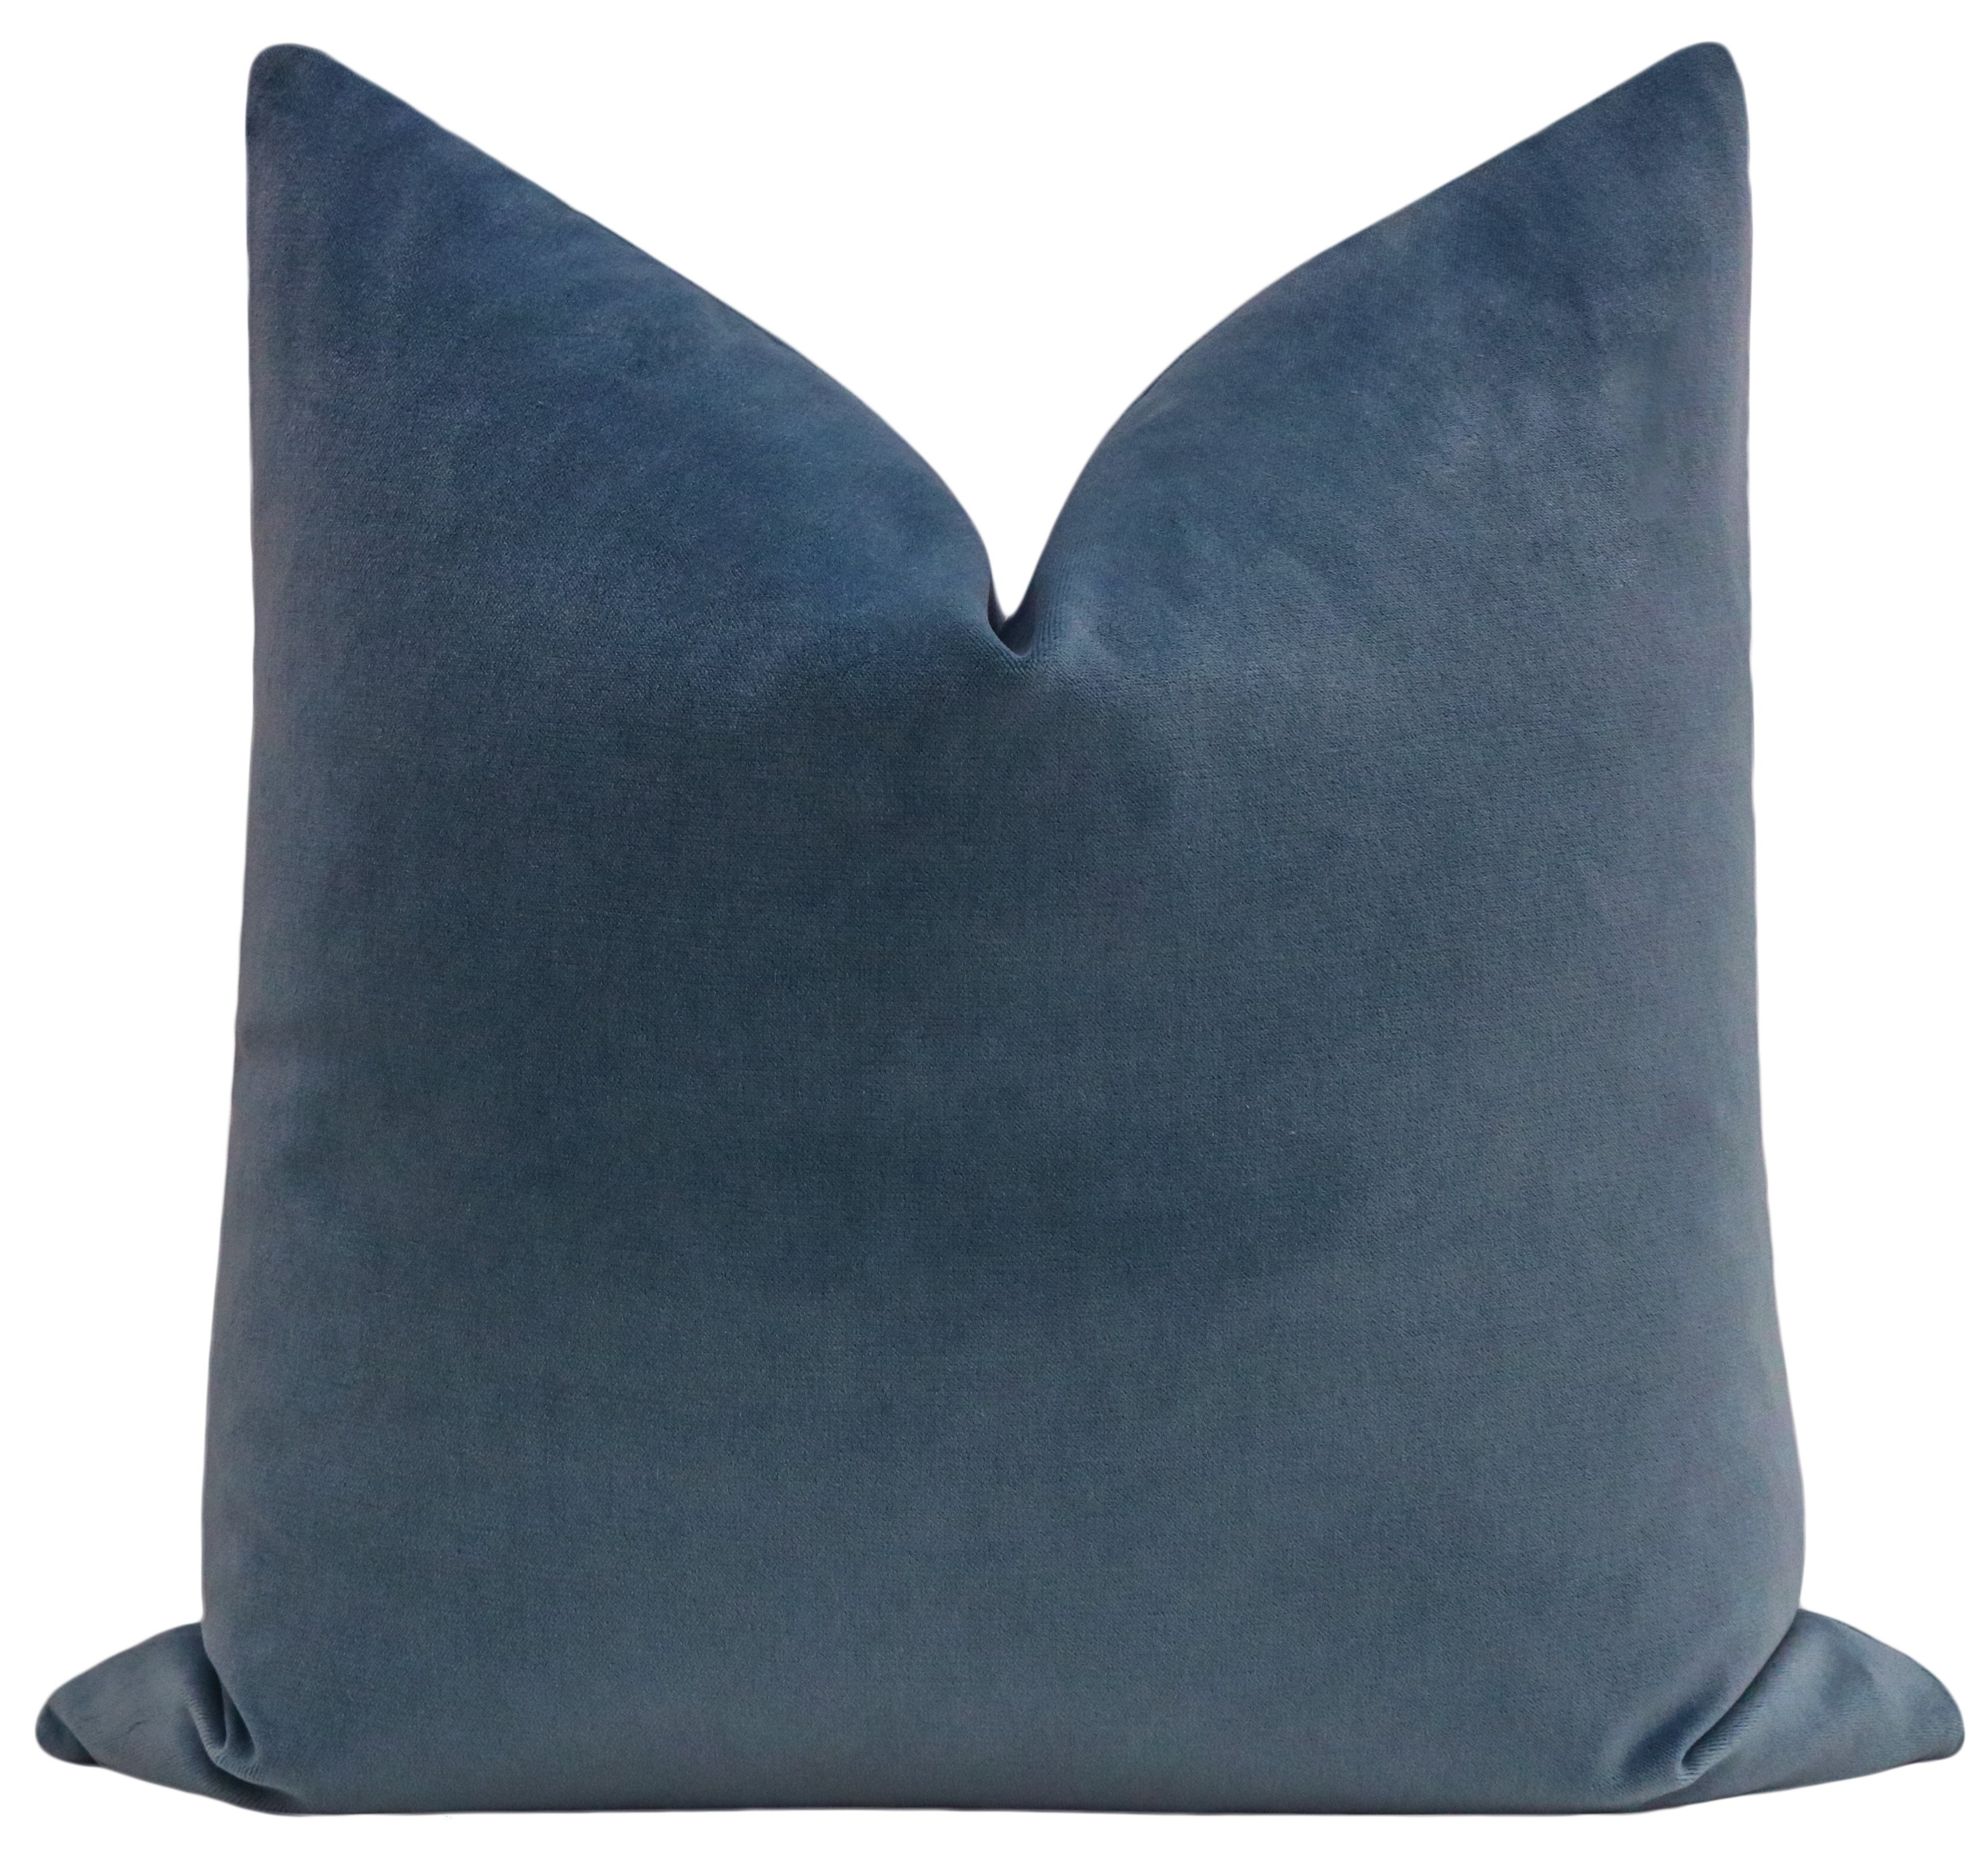 Society Velvet Pillow Cover, Capri Blue, 22"x22" - Little Design Company